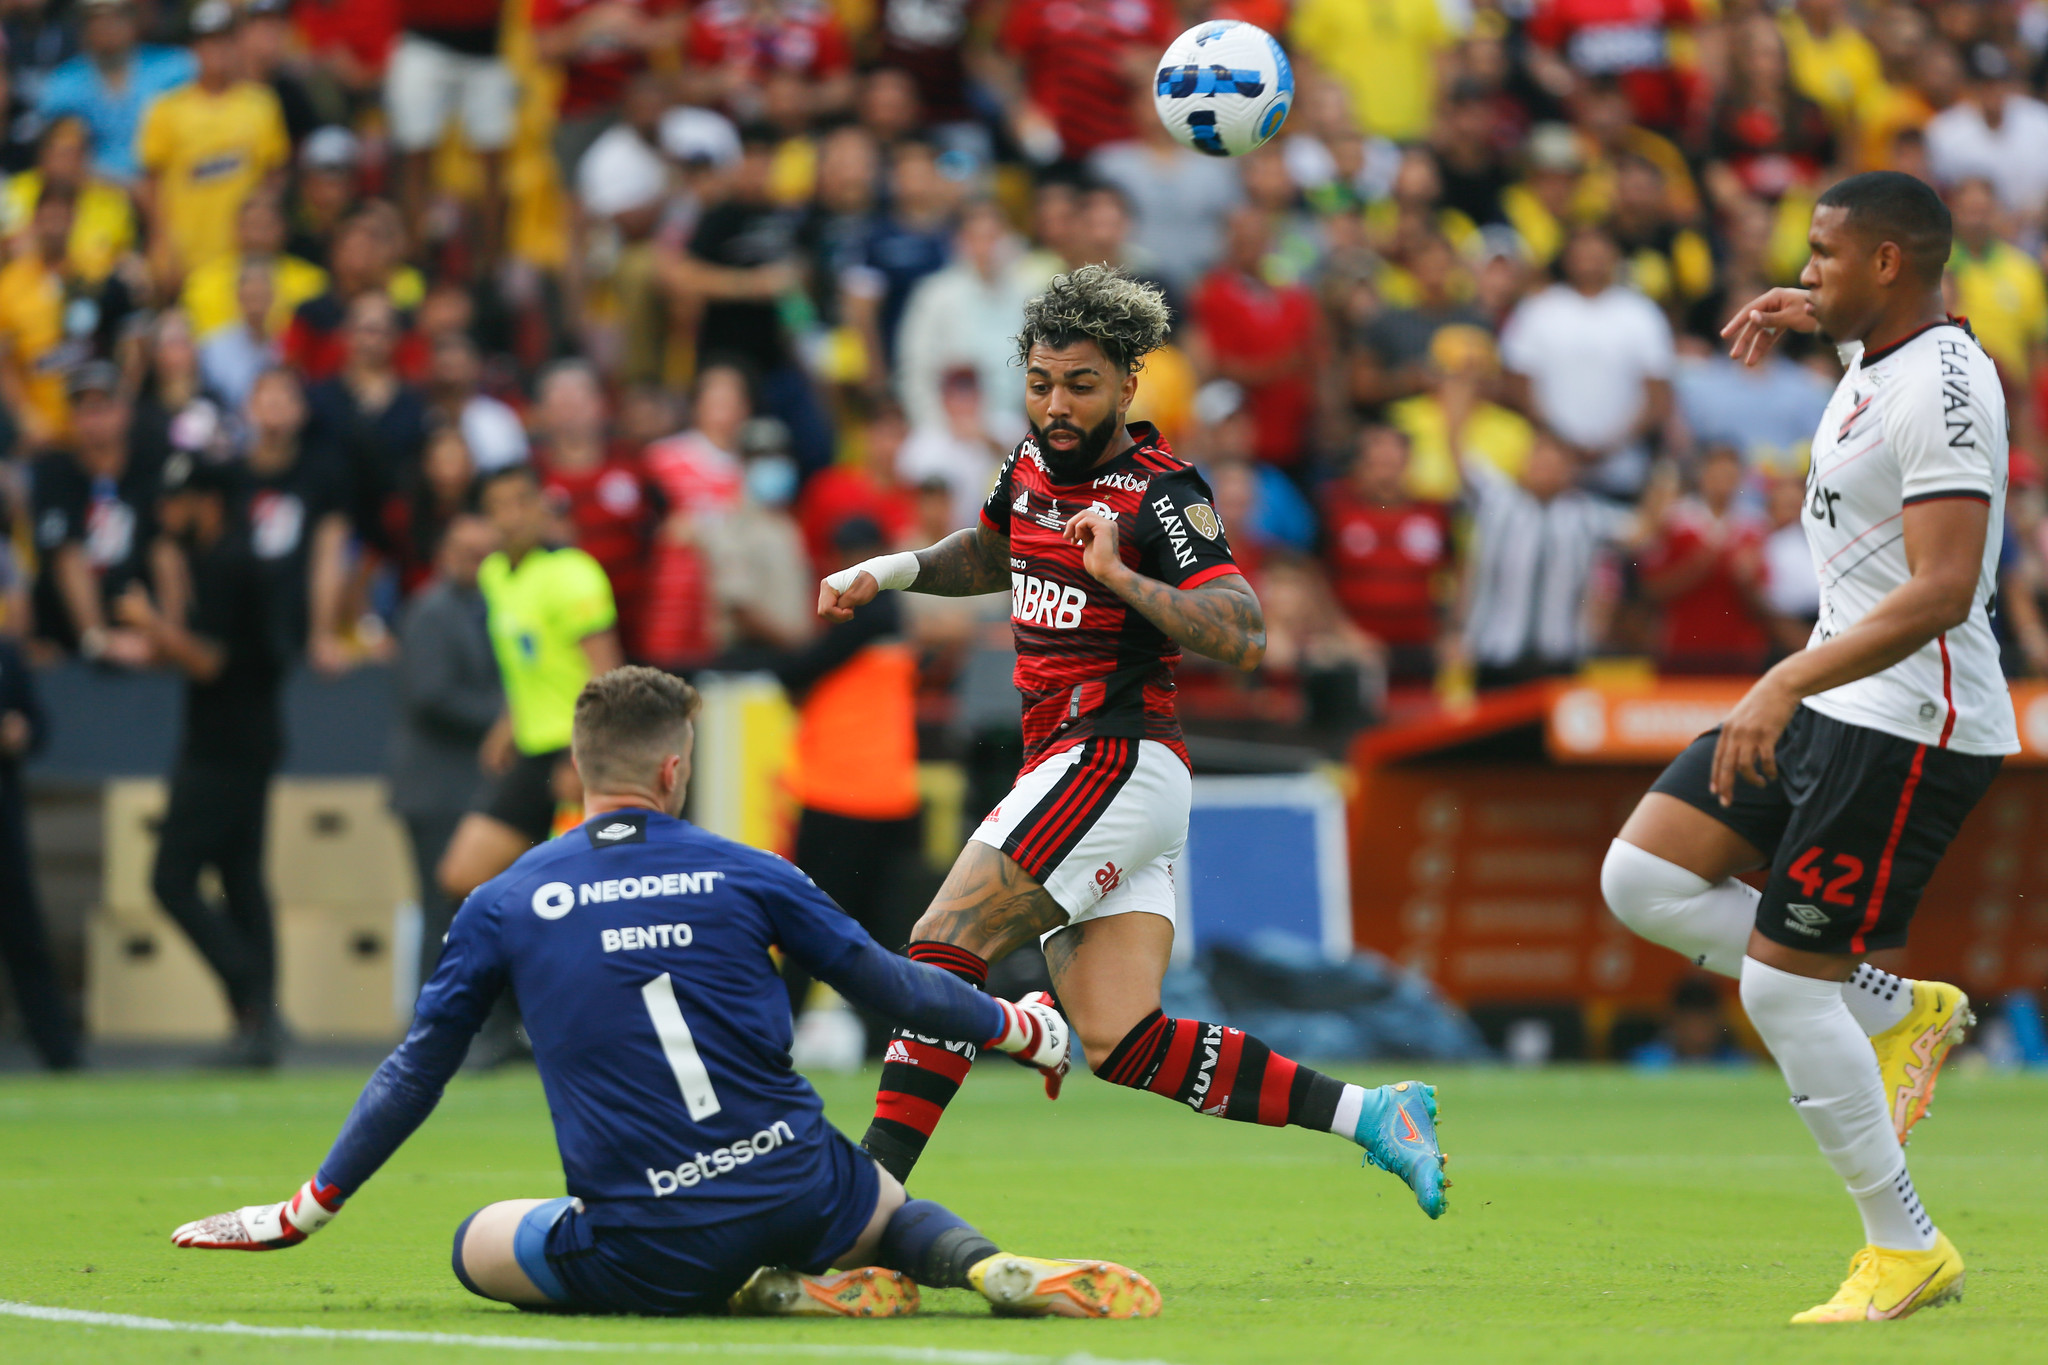 Análise ENM: Flamengo aproveita expulsão de zagueiro do Athletico, marca em seguida e vence a Libertadores